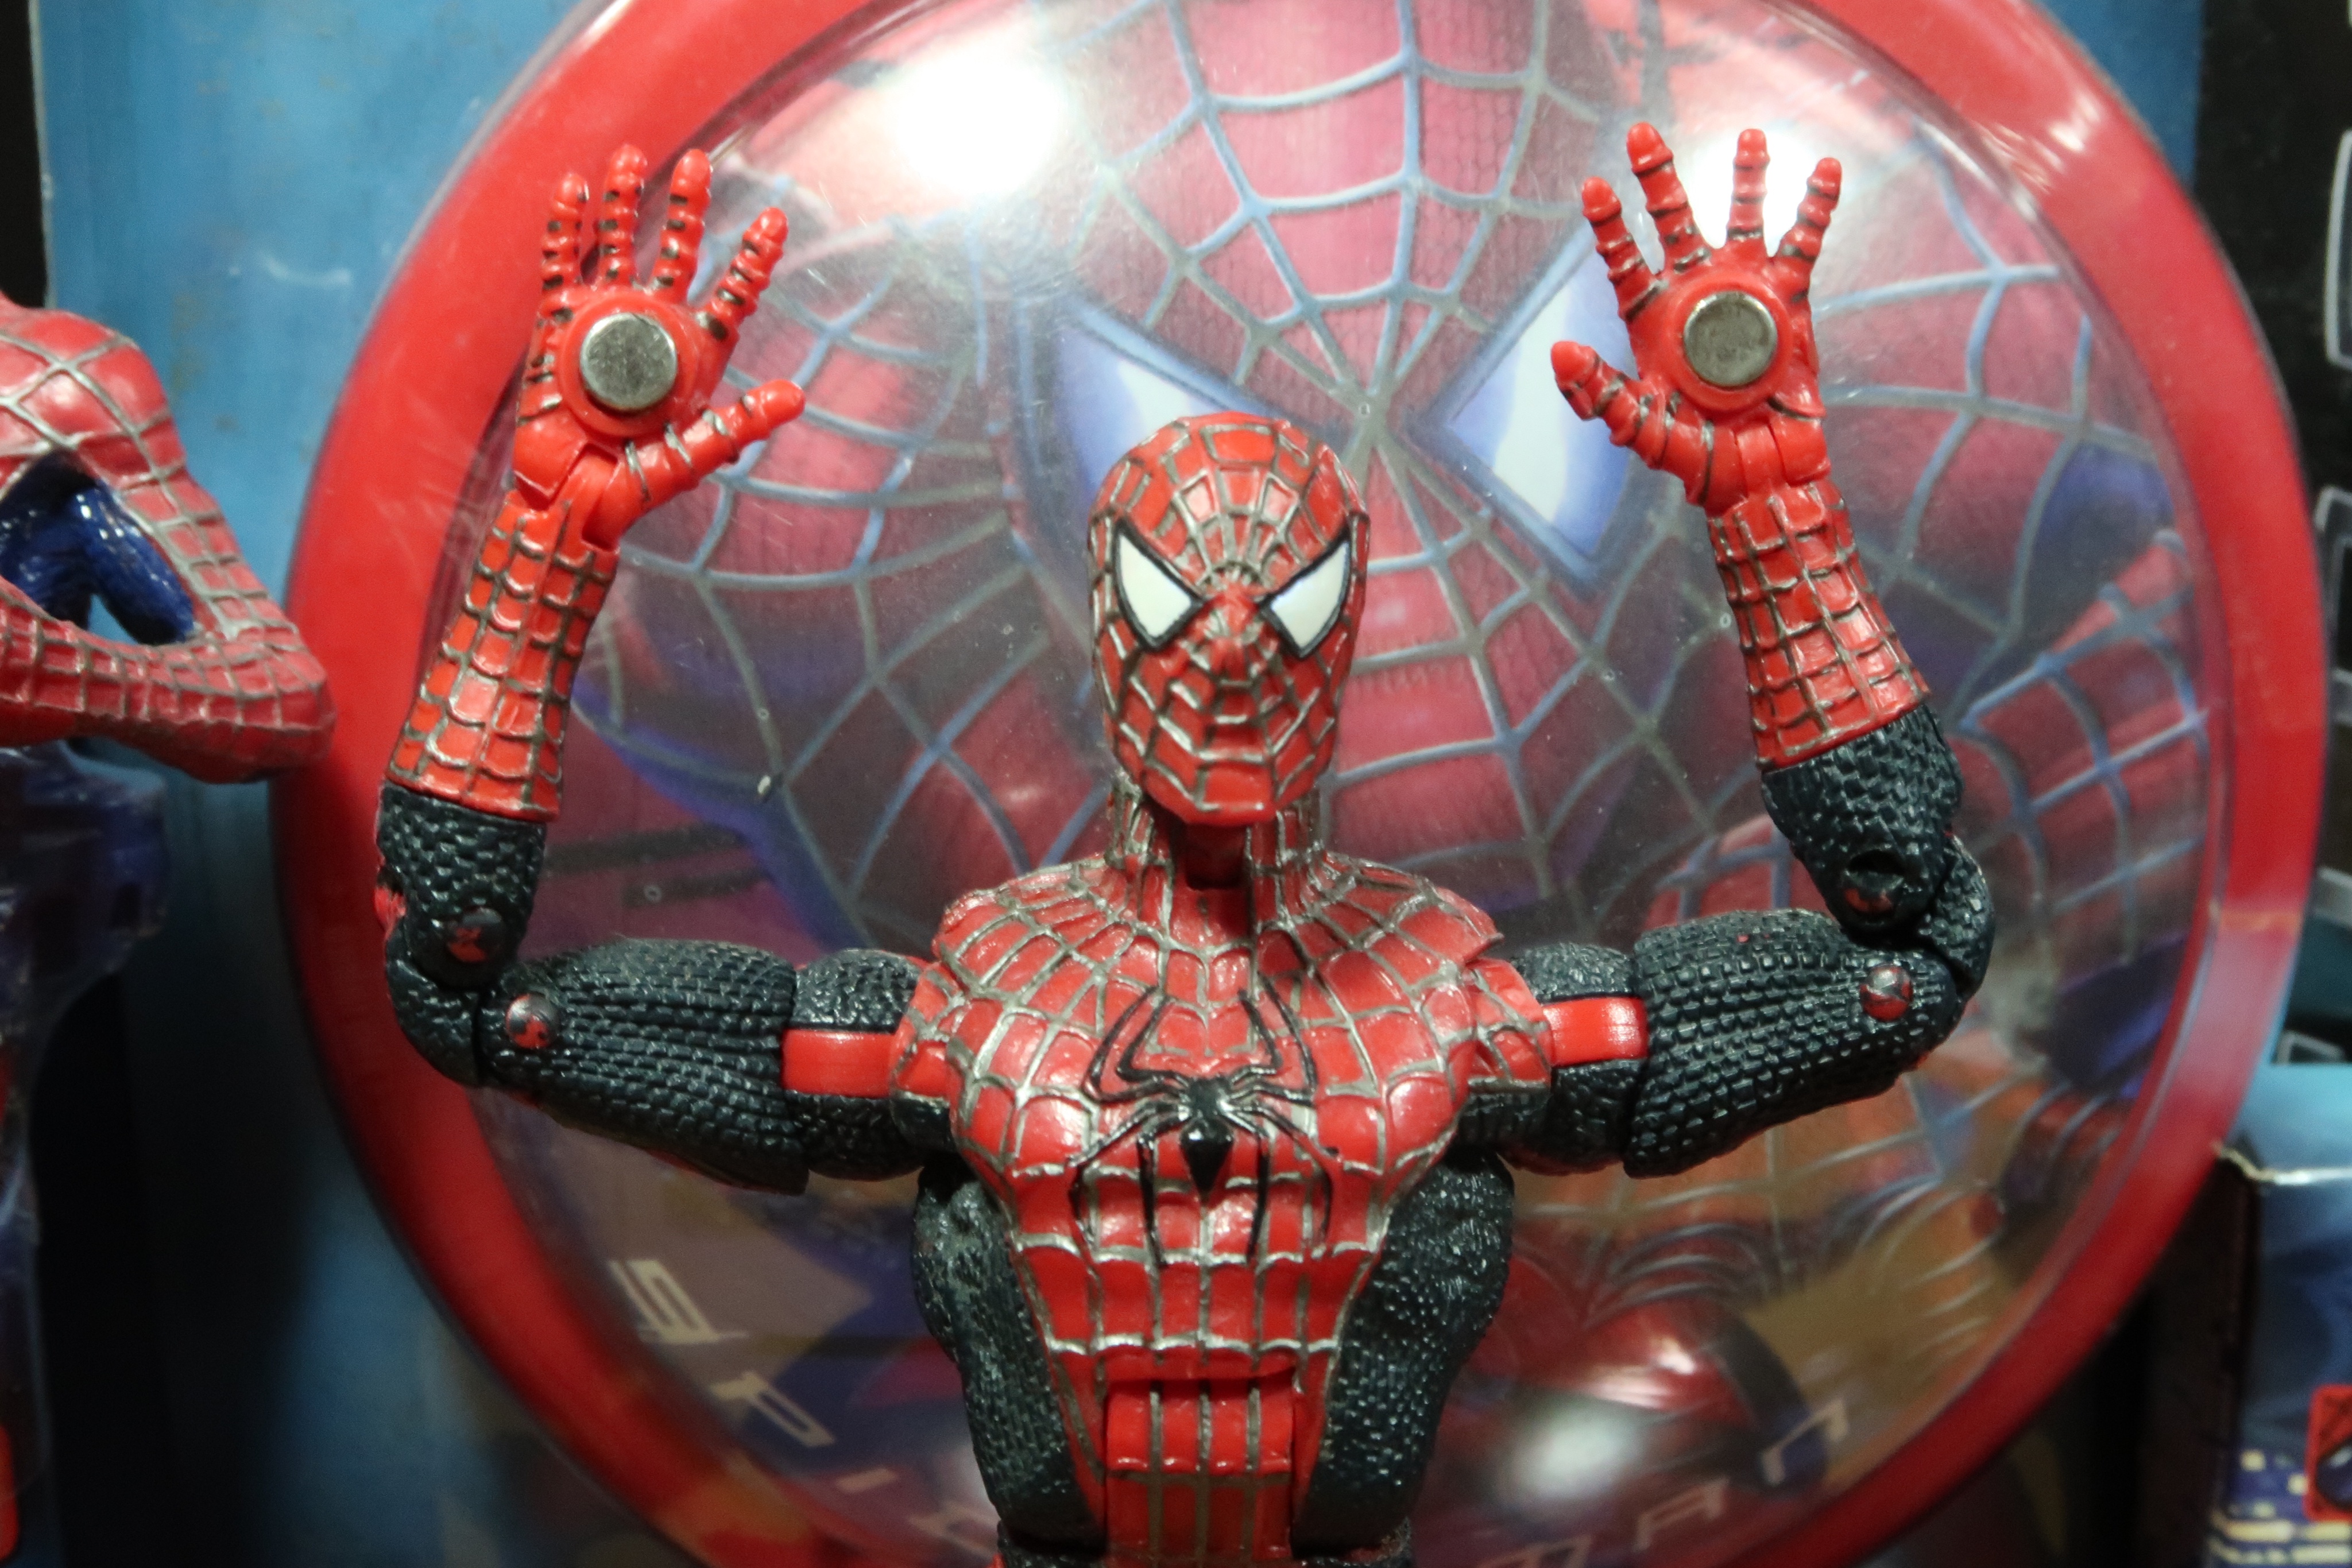 Figurine Spiderman Magnétique